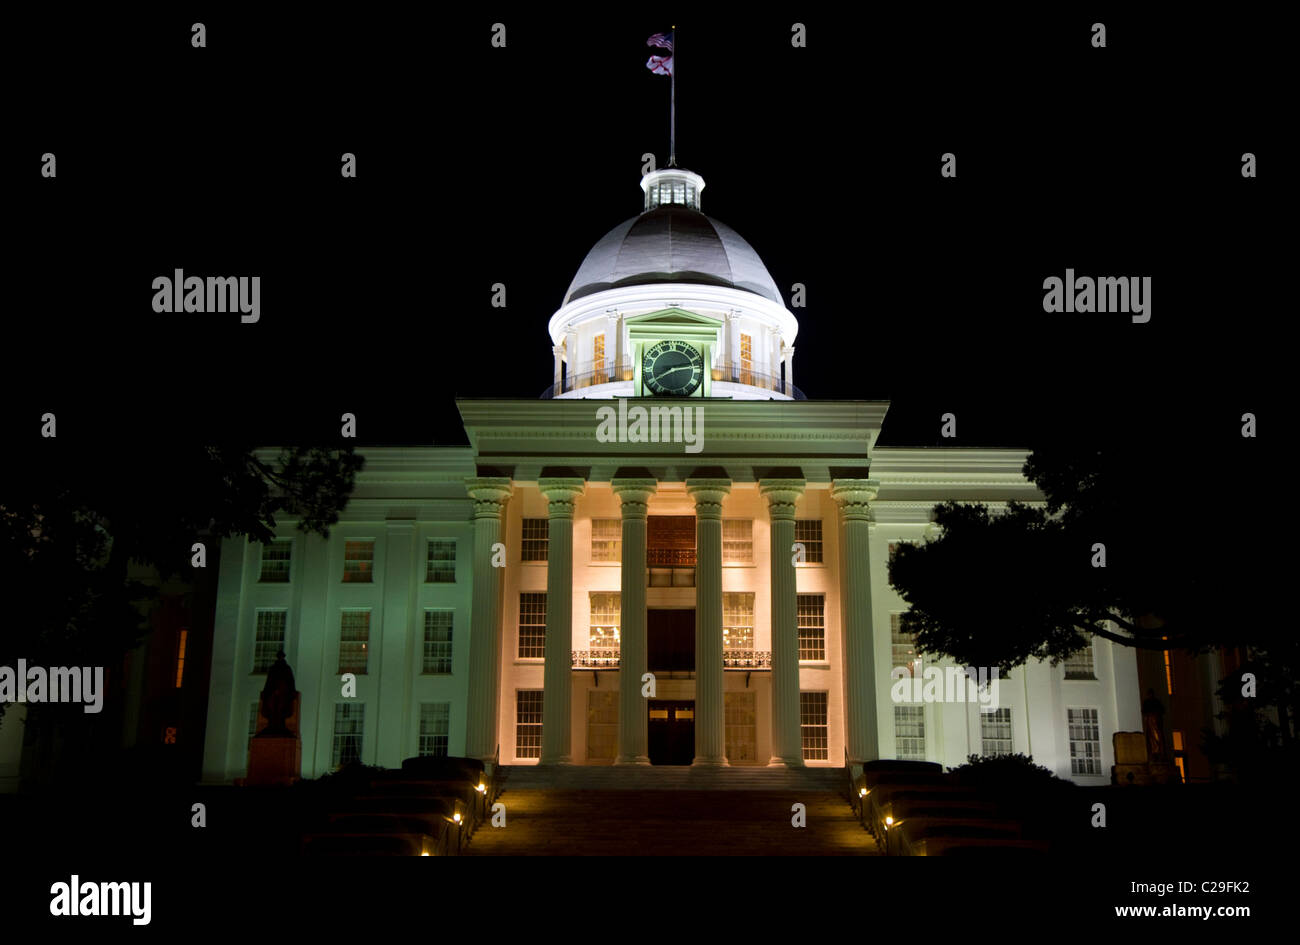 Das Alabama State Capitol Building in der Nacht befindet sich auf Goat Hill in Montgomery, Alabama, USA. Stockfoto